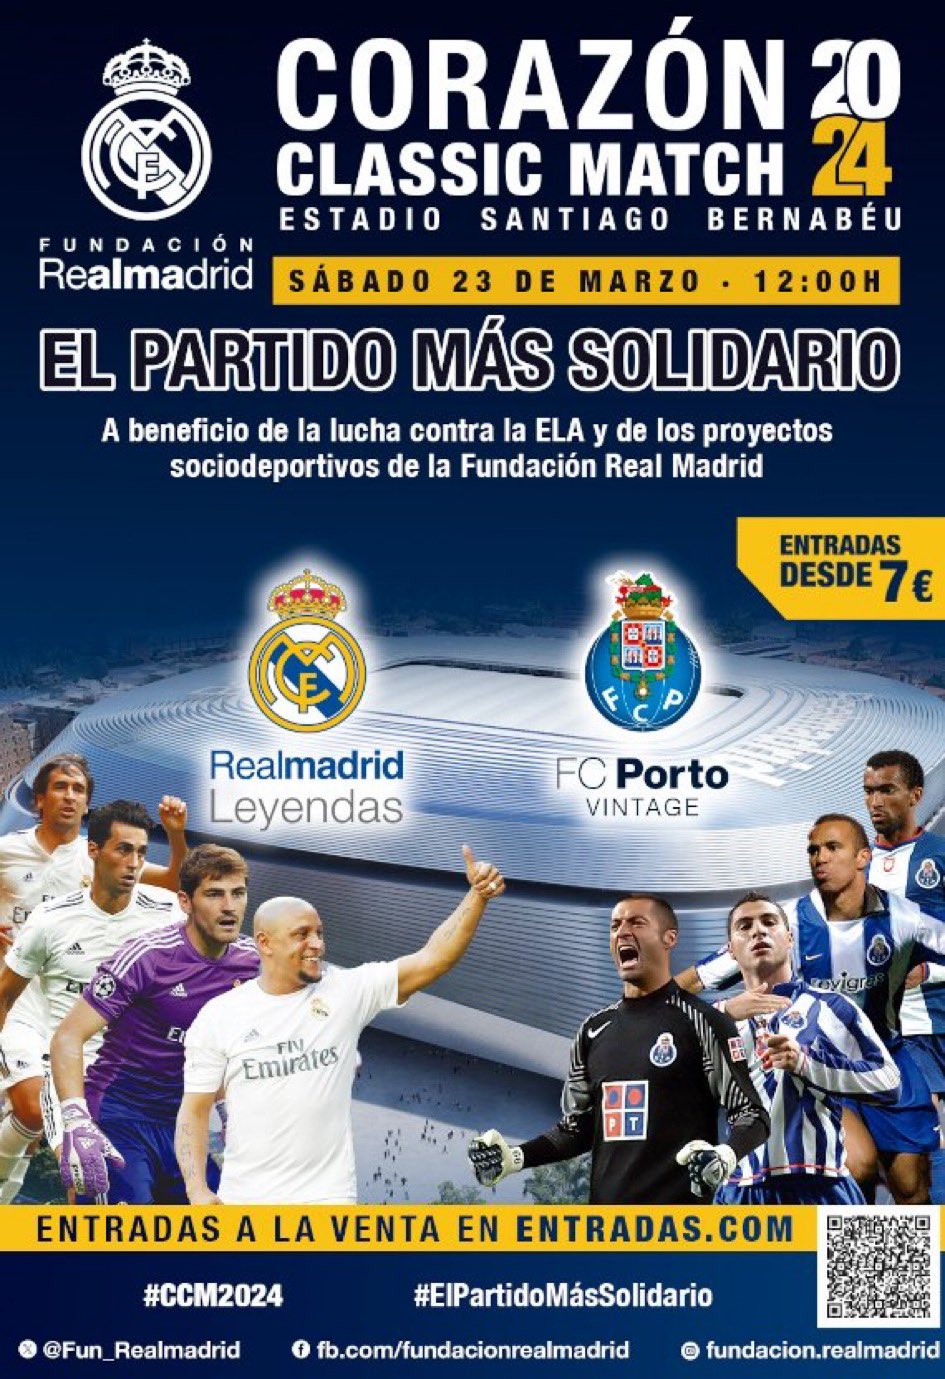 Fundación Real Madrid (@Fun_Realmadrid) / X